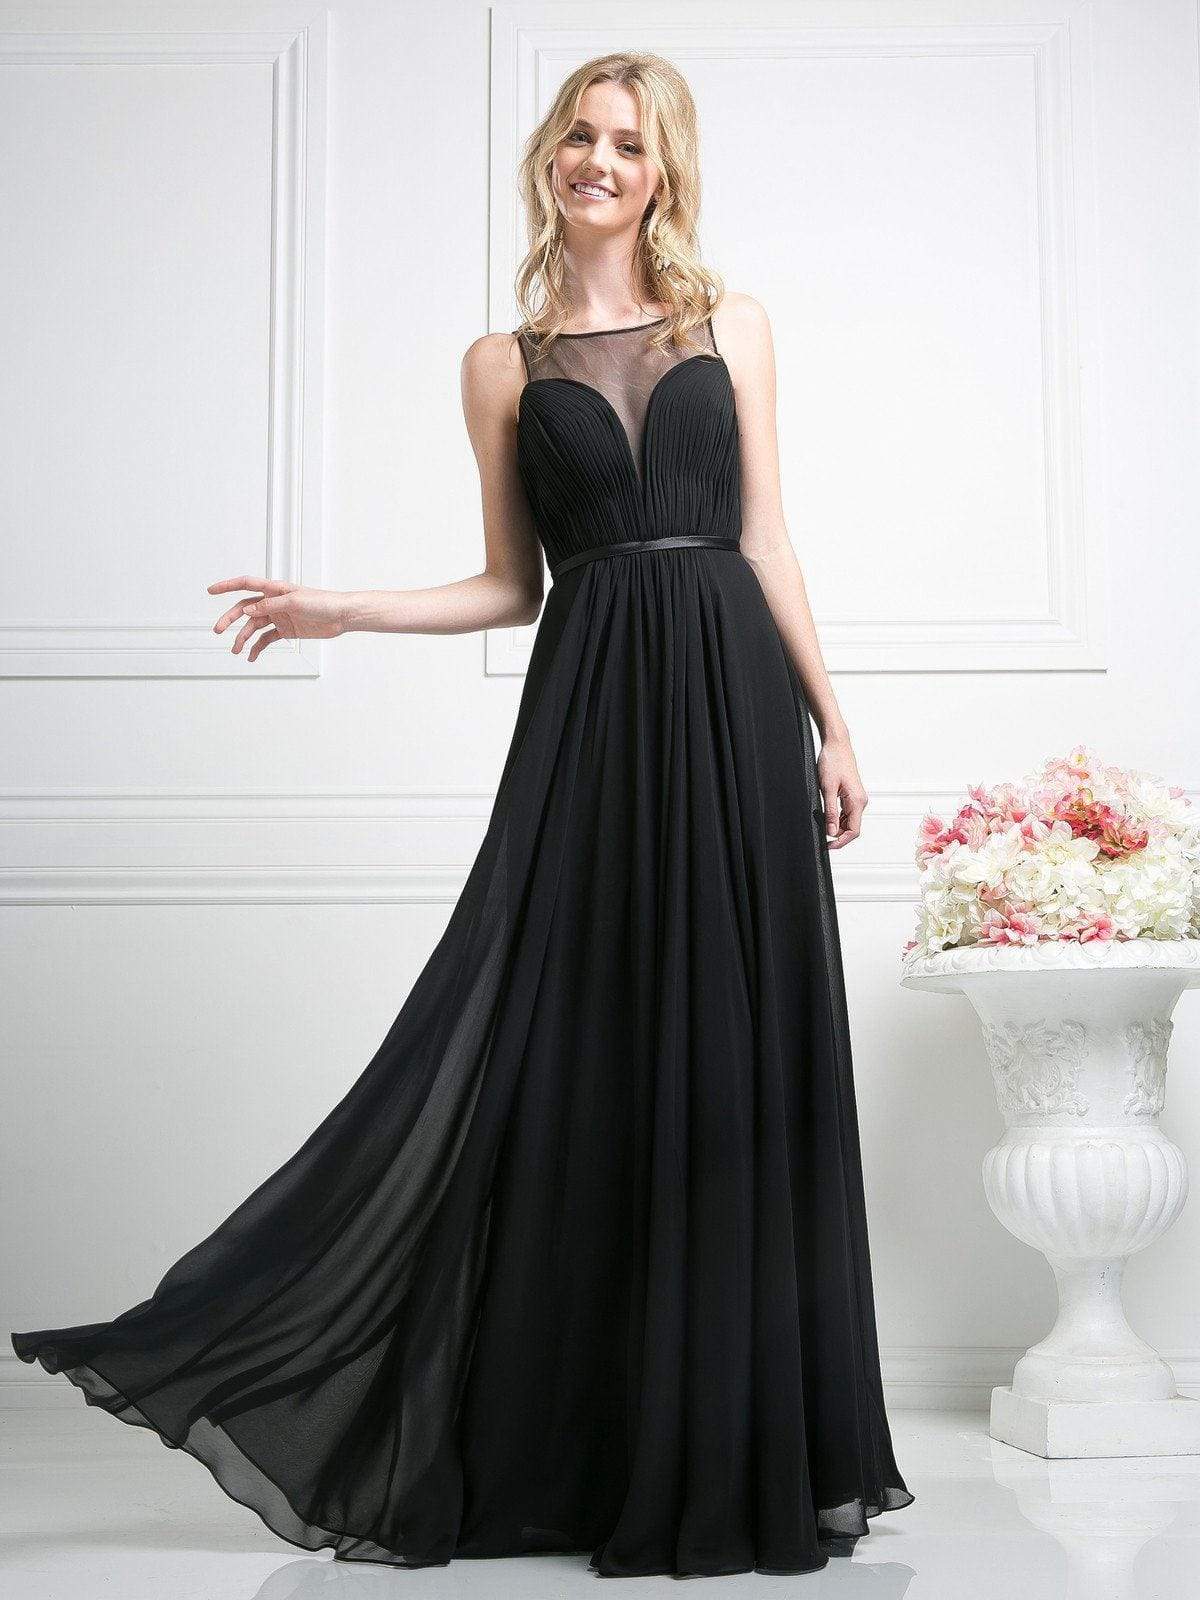 Cinderella Divine - 7458 Illusion Neckline Chiffon Empire Waist Gown Special Occasion Dress 4 / Black